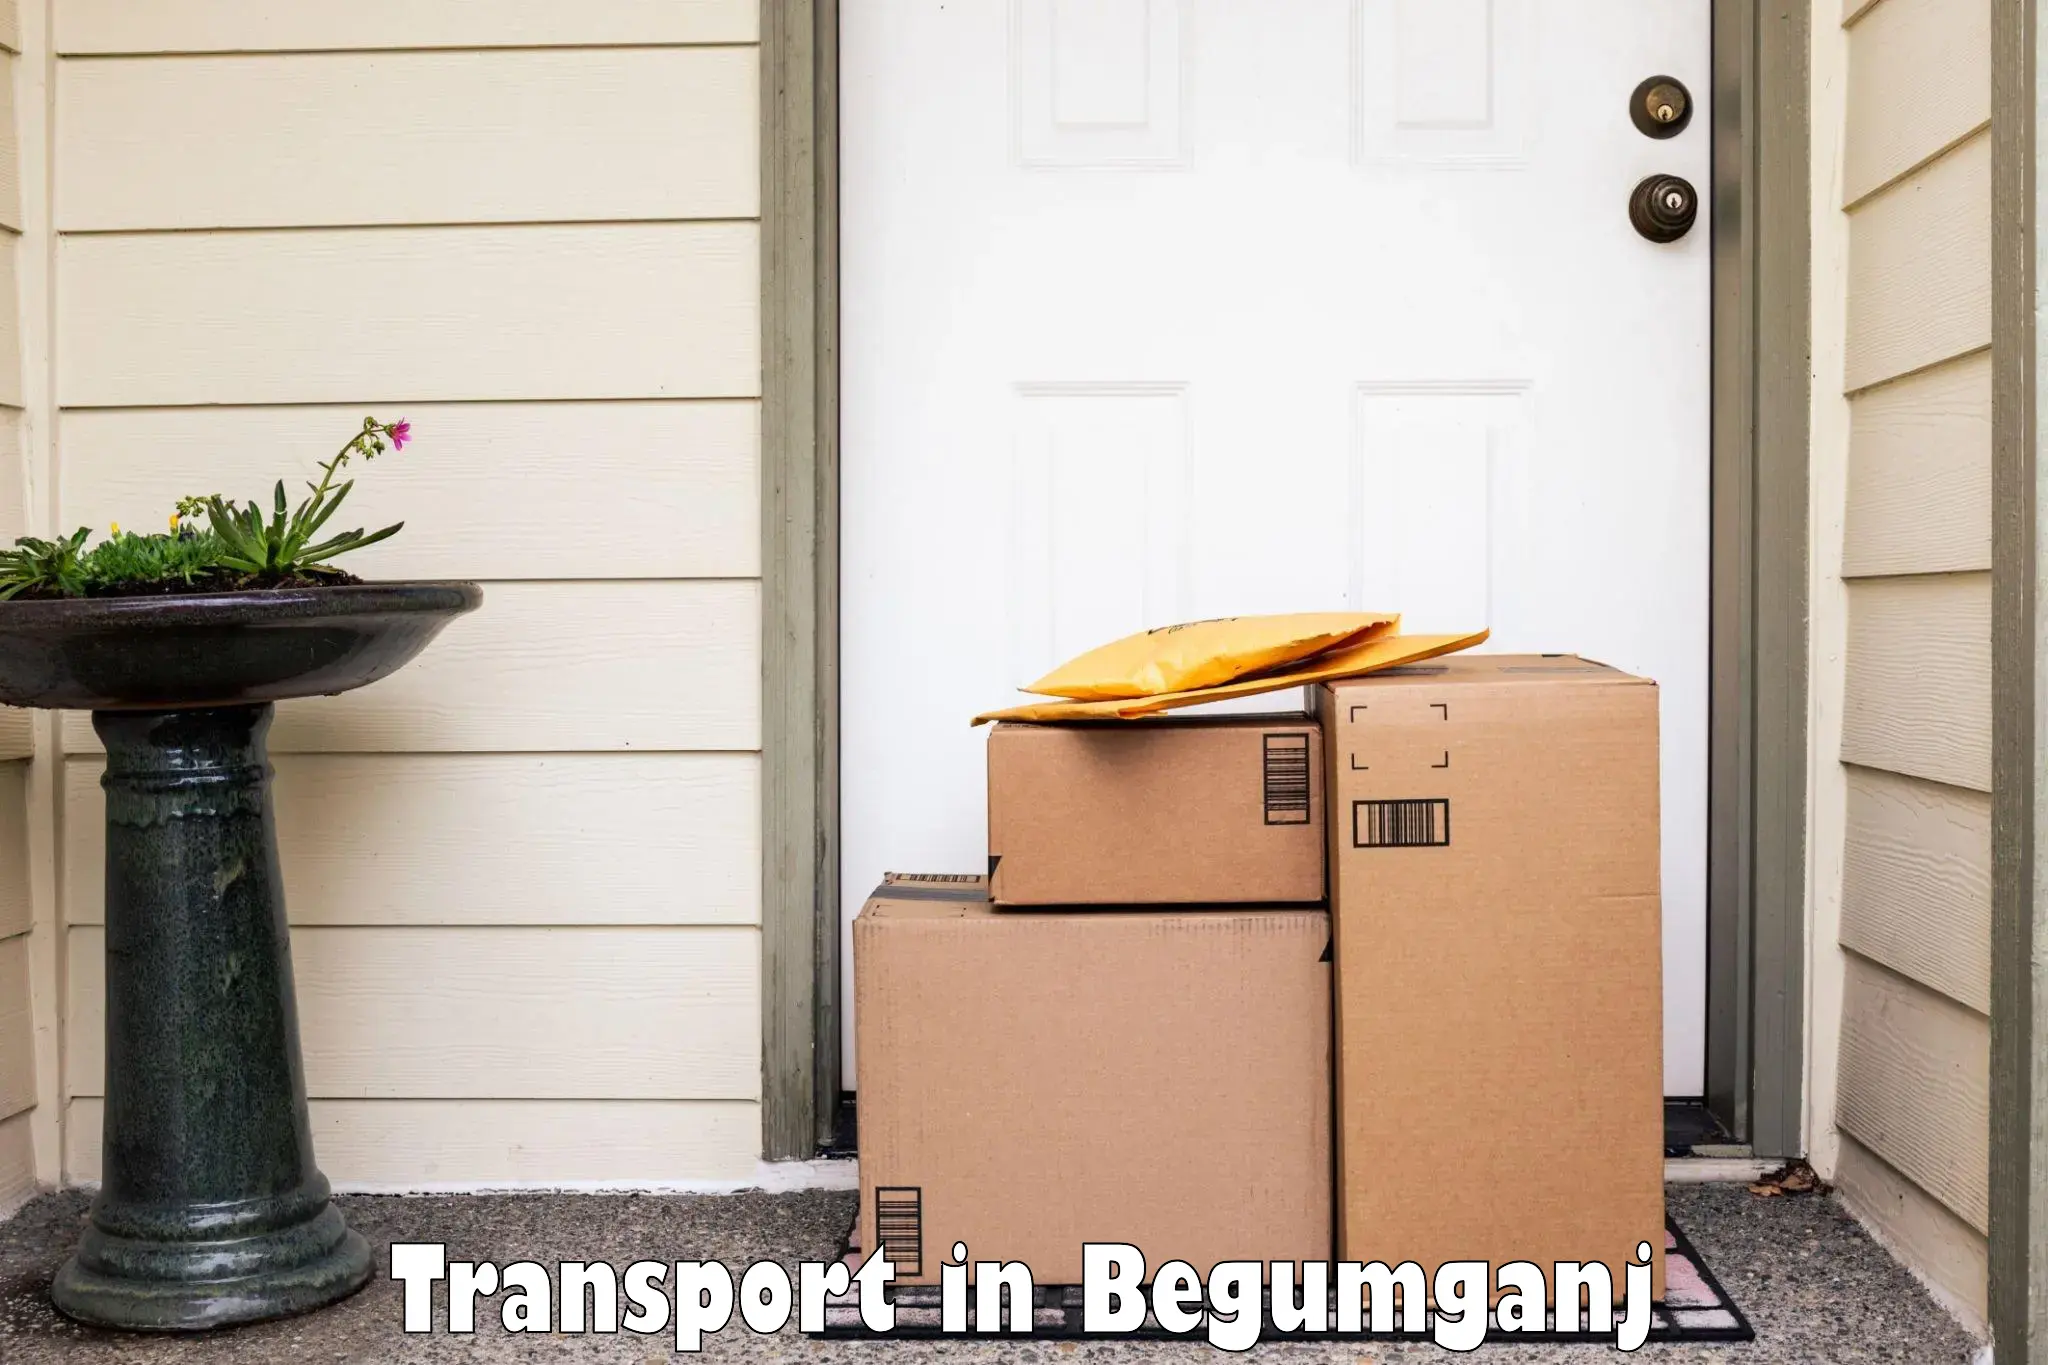 Daily parcel service transport in Begumganj